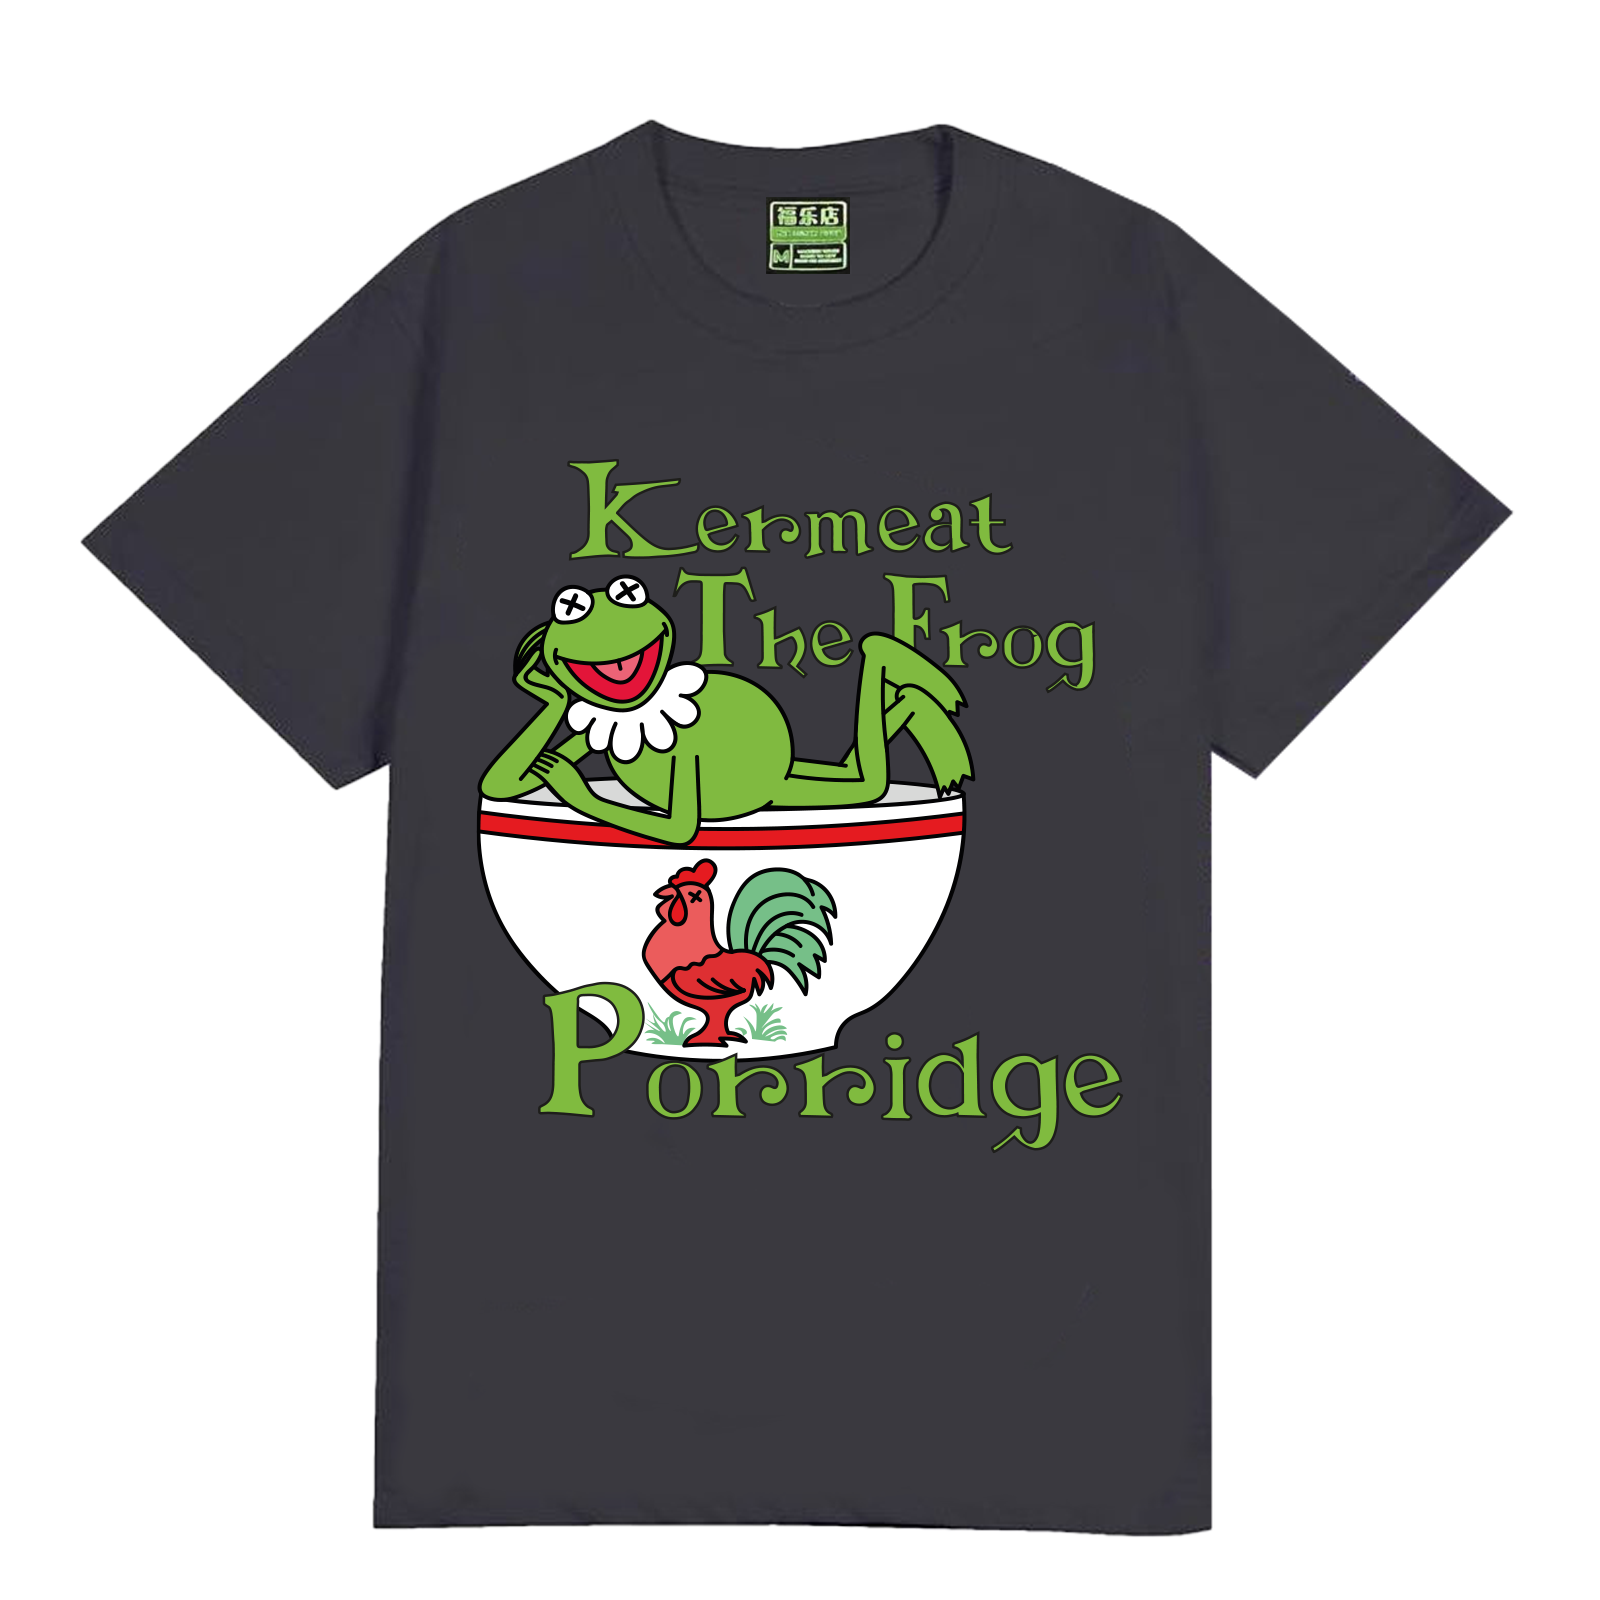 Lucky Kermeat T-shirt